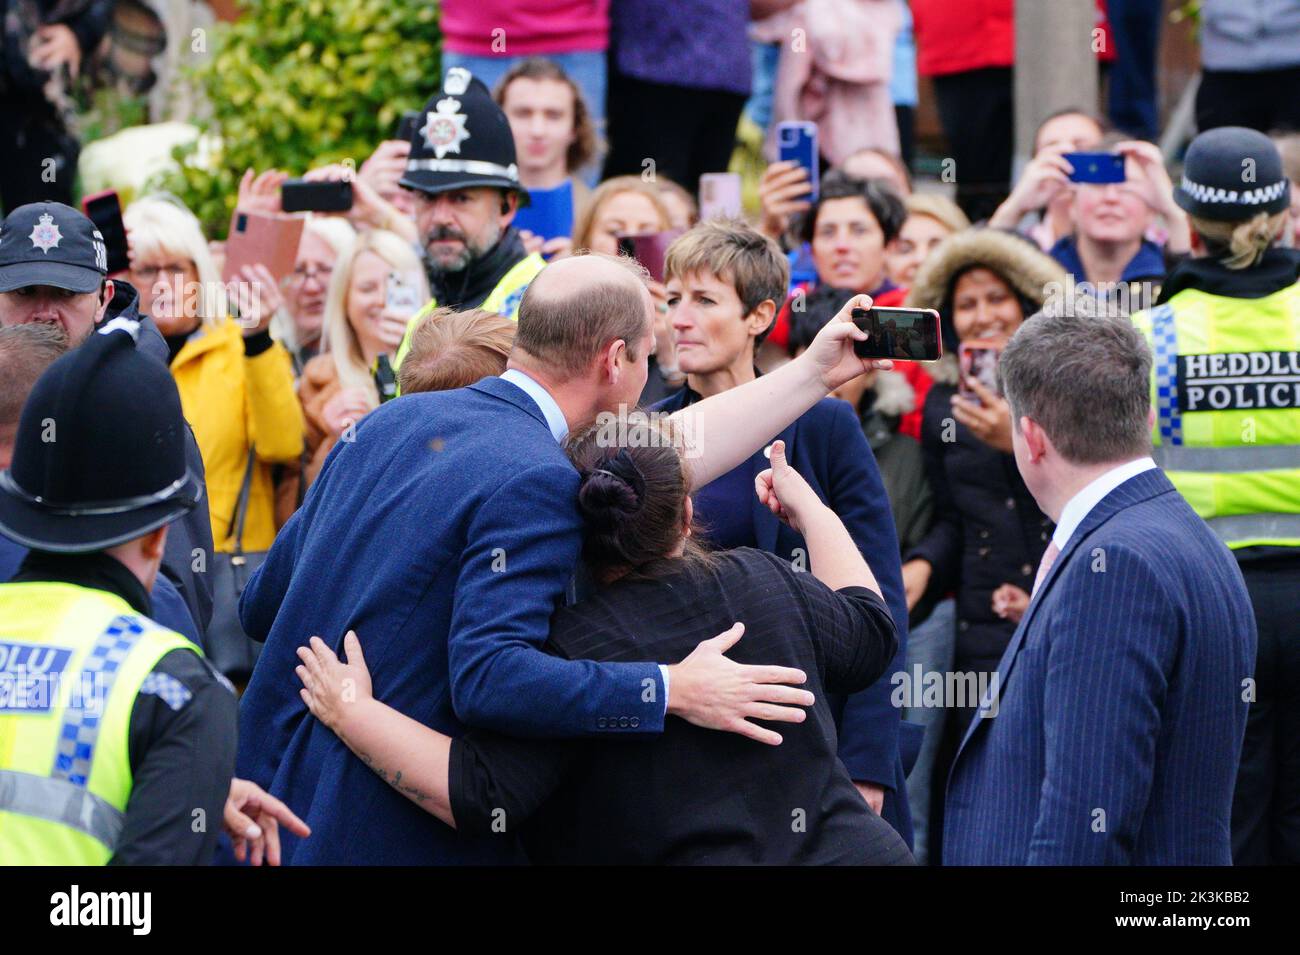 Le Prince de Galles rencontre des membres du public lorsqu'il part après une visite à l'église St Thomas, à Swansea, au pays de Galles. Date de la photo: Mardi 27 septembre 2022. Banque D'Images